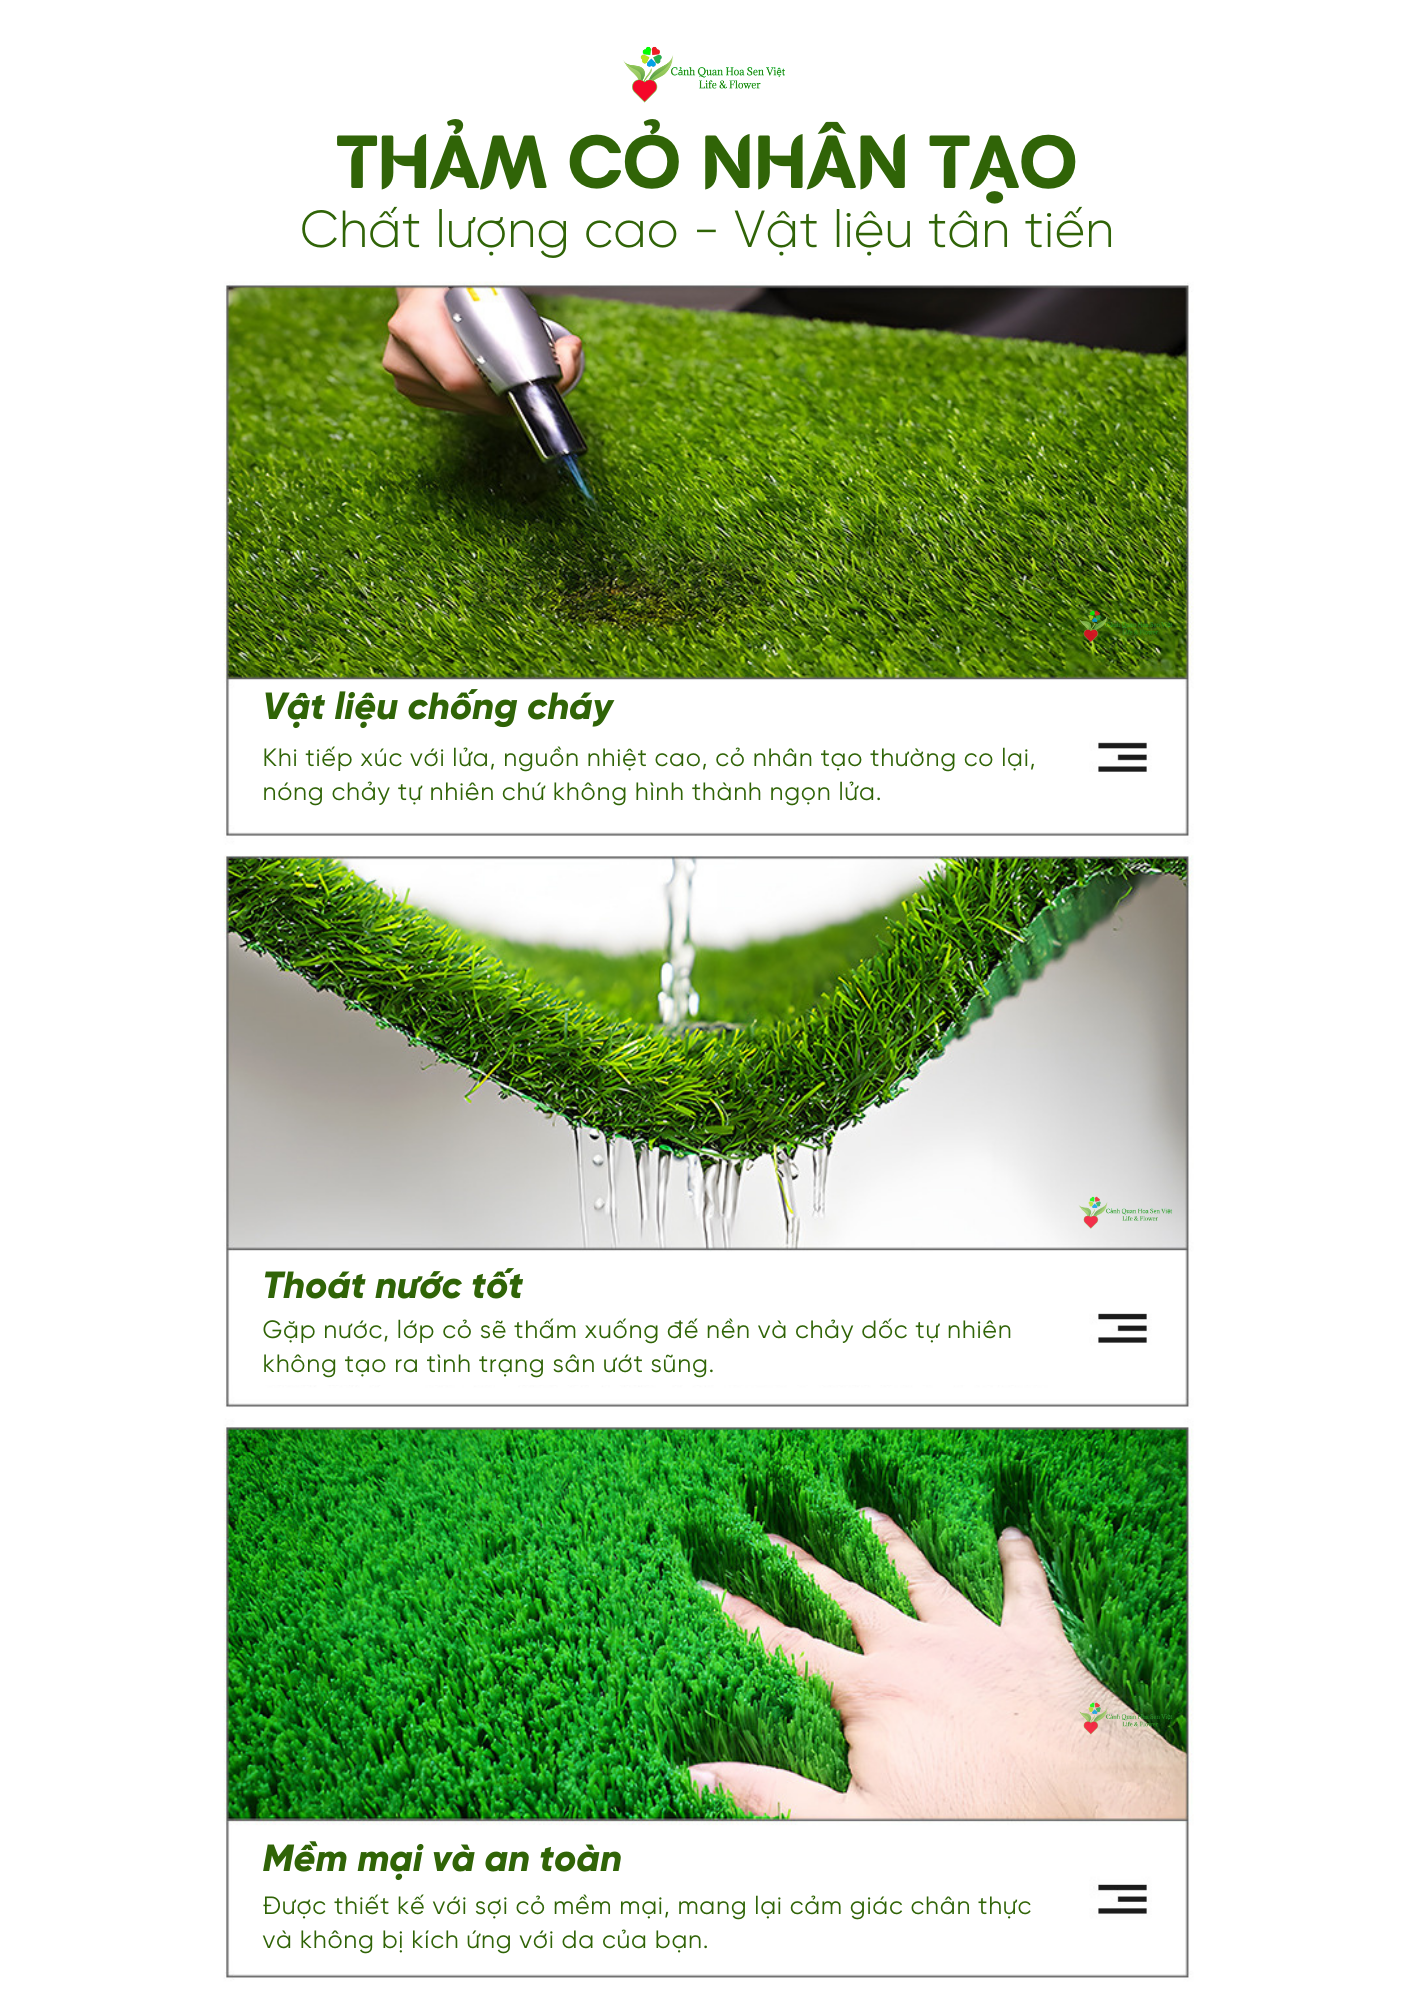 Cỏ nhân tạo và các ưu điểm - Cửa hàng thảm cỏ nhân tạo Đà Nẵng 